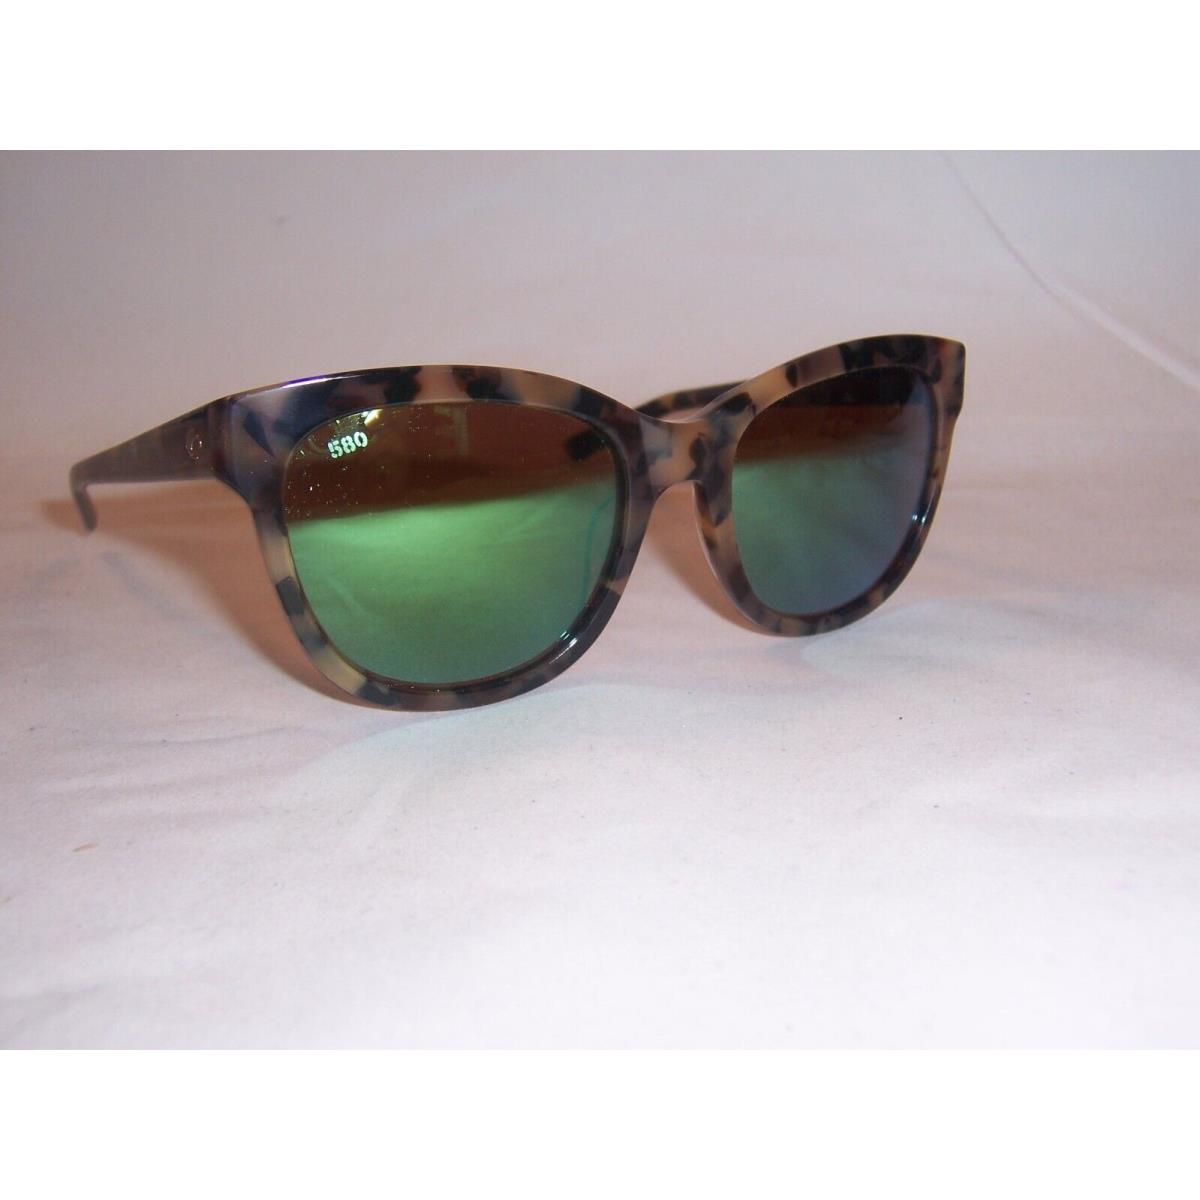 Costa Del Mar Bimini Sunglasses Tortoise/green Mirror 580G Polarized